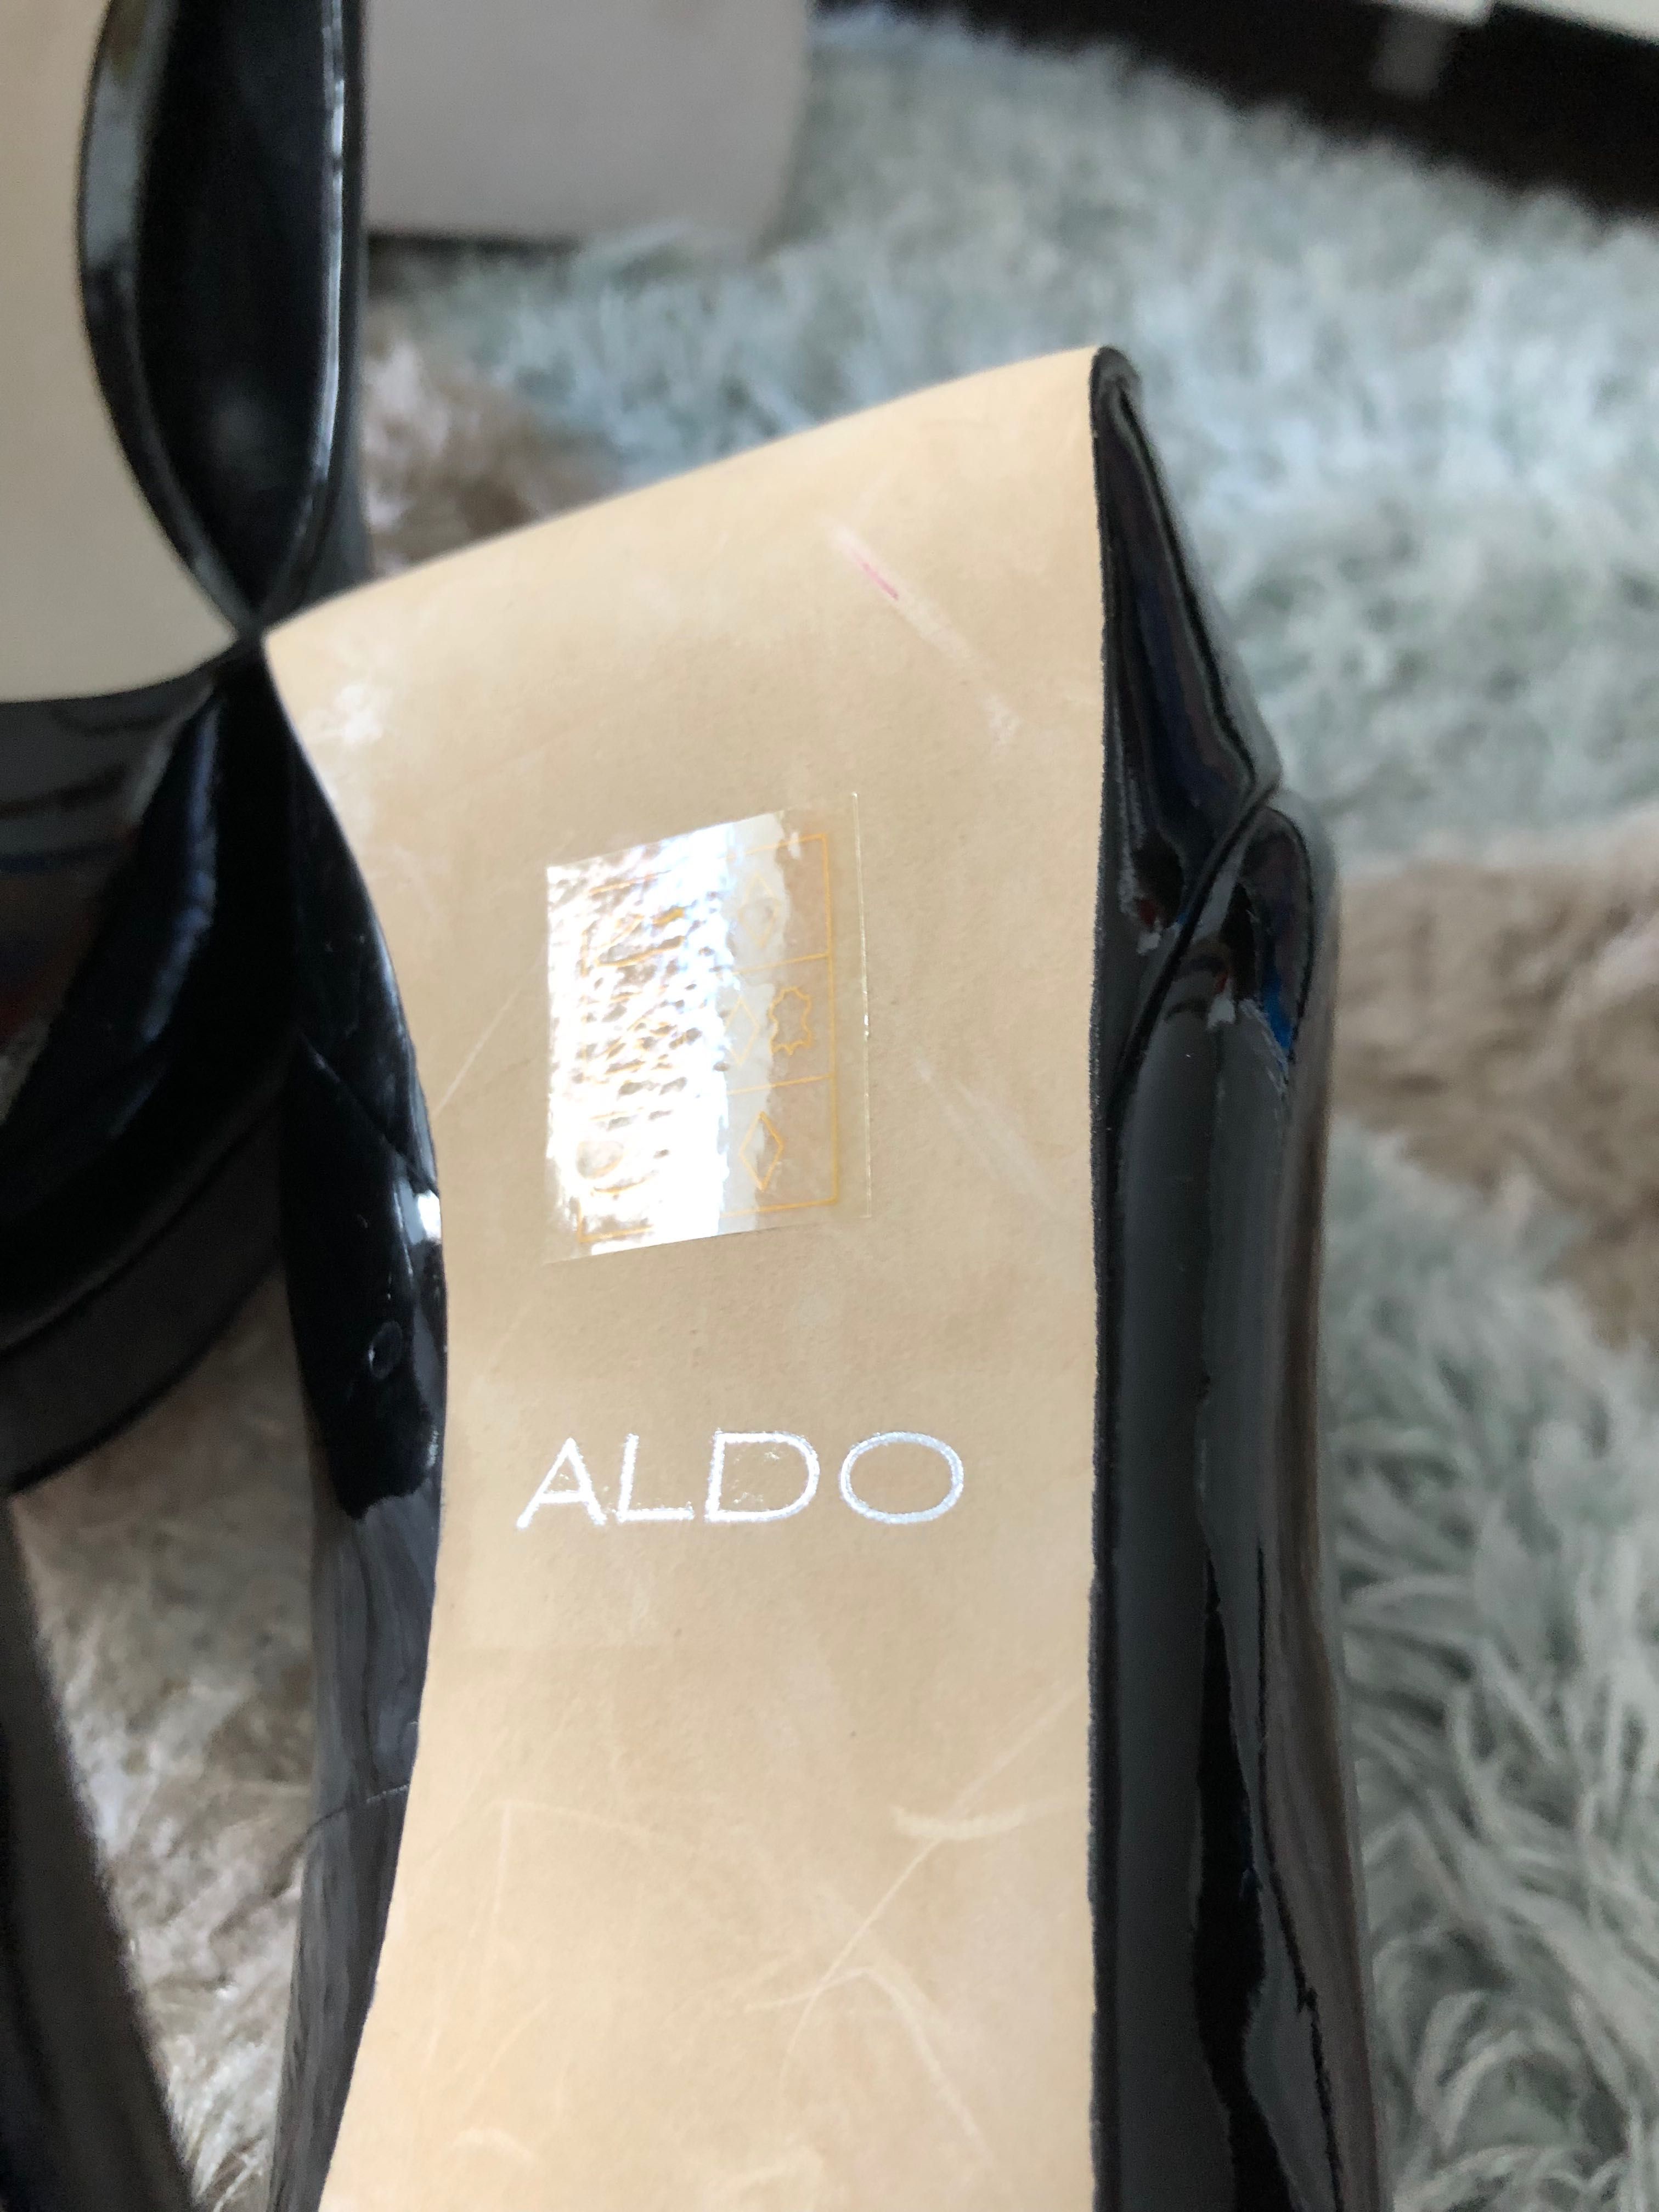 Дамски елегантни обувки ALDO